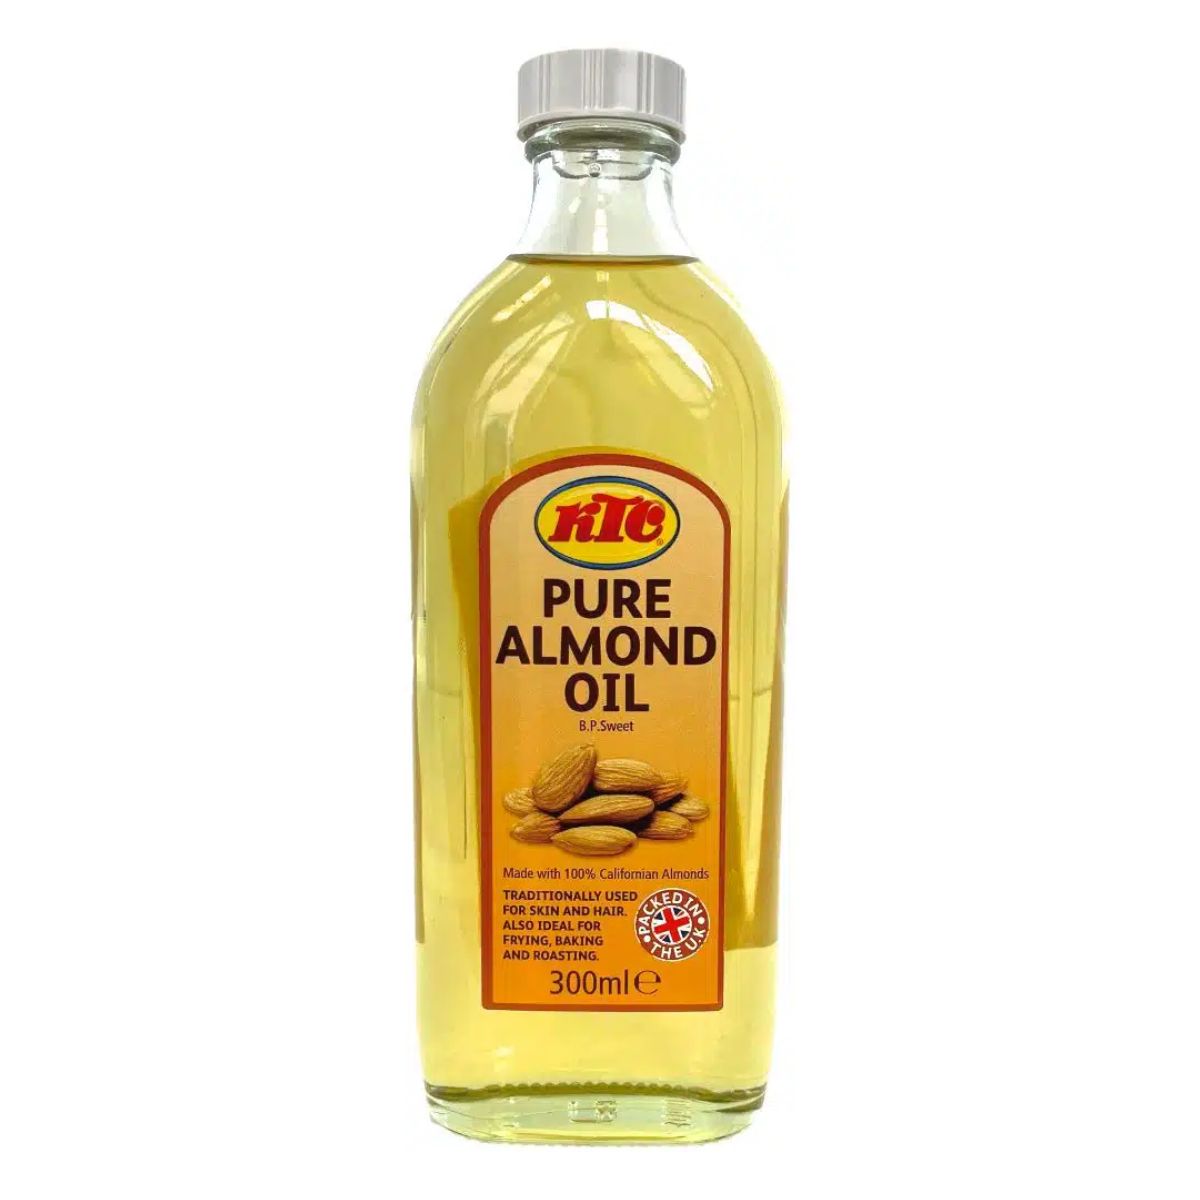 A bottle of KTC - Pure Almond Oil - 300ml.